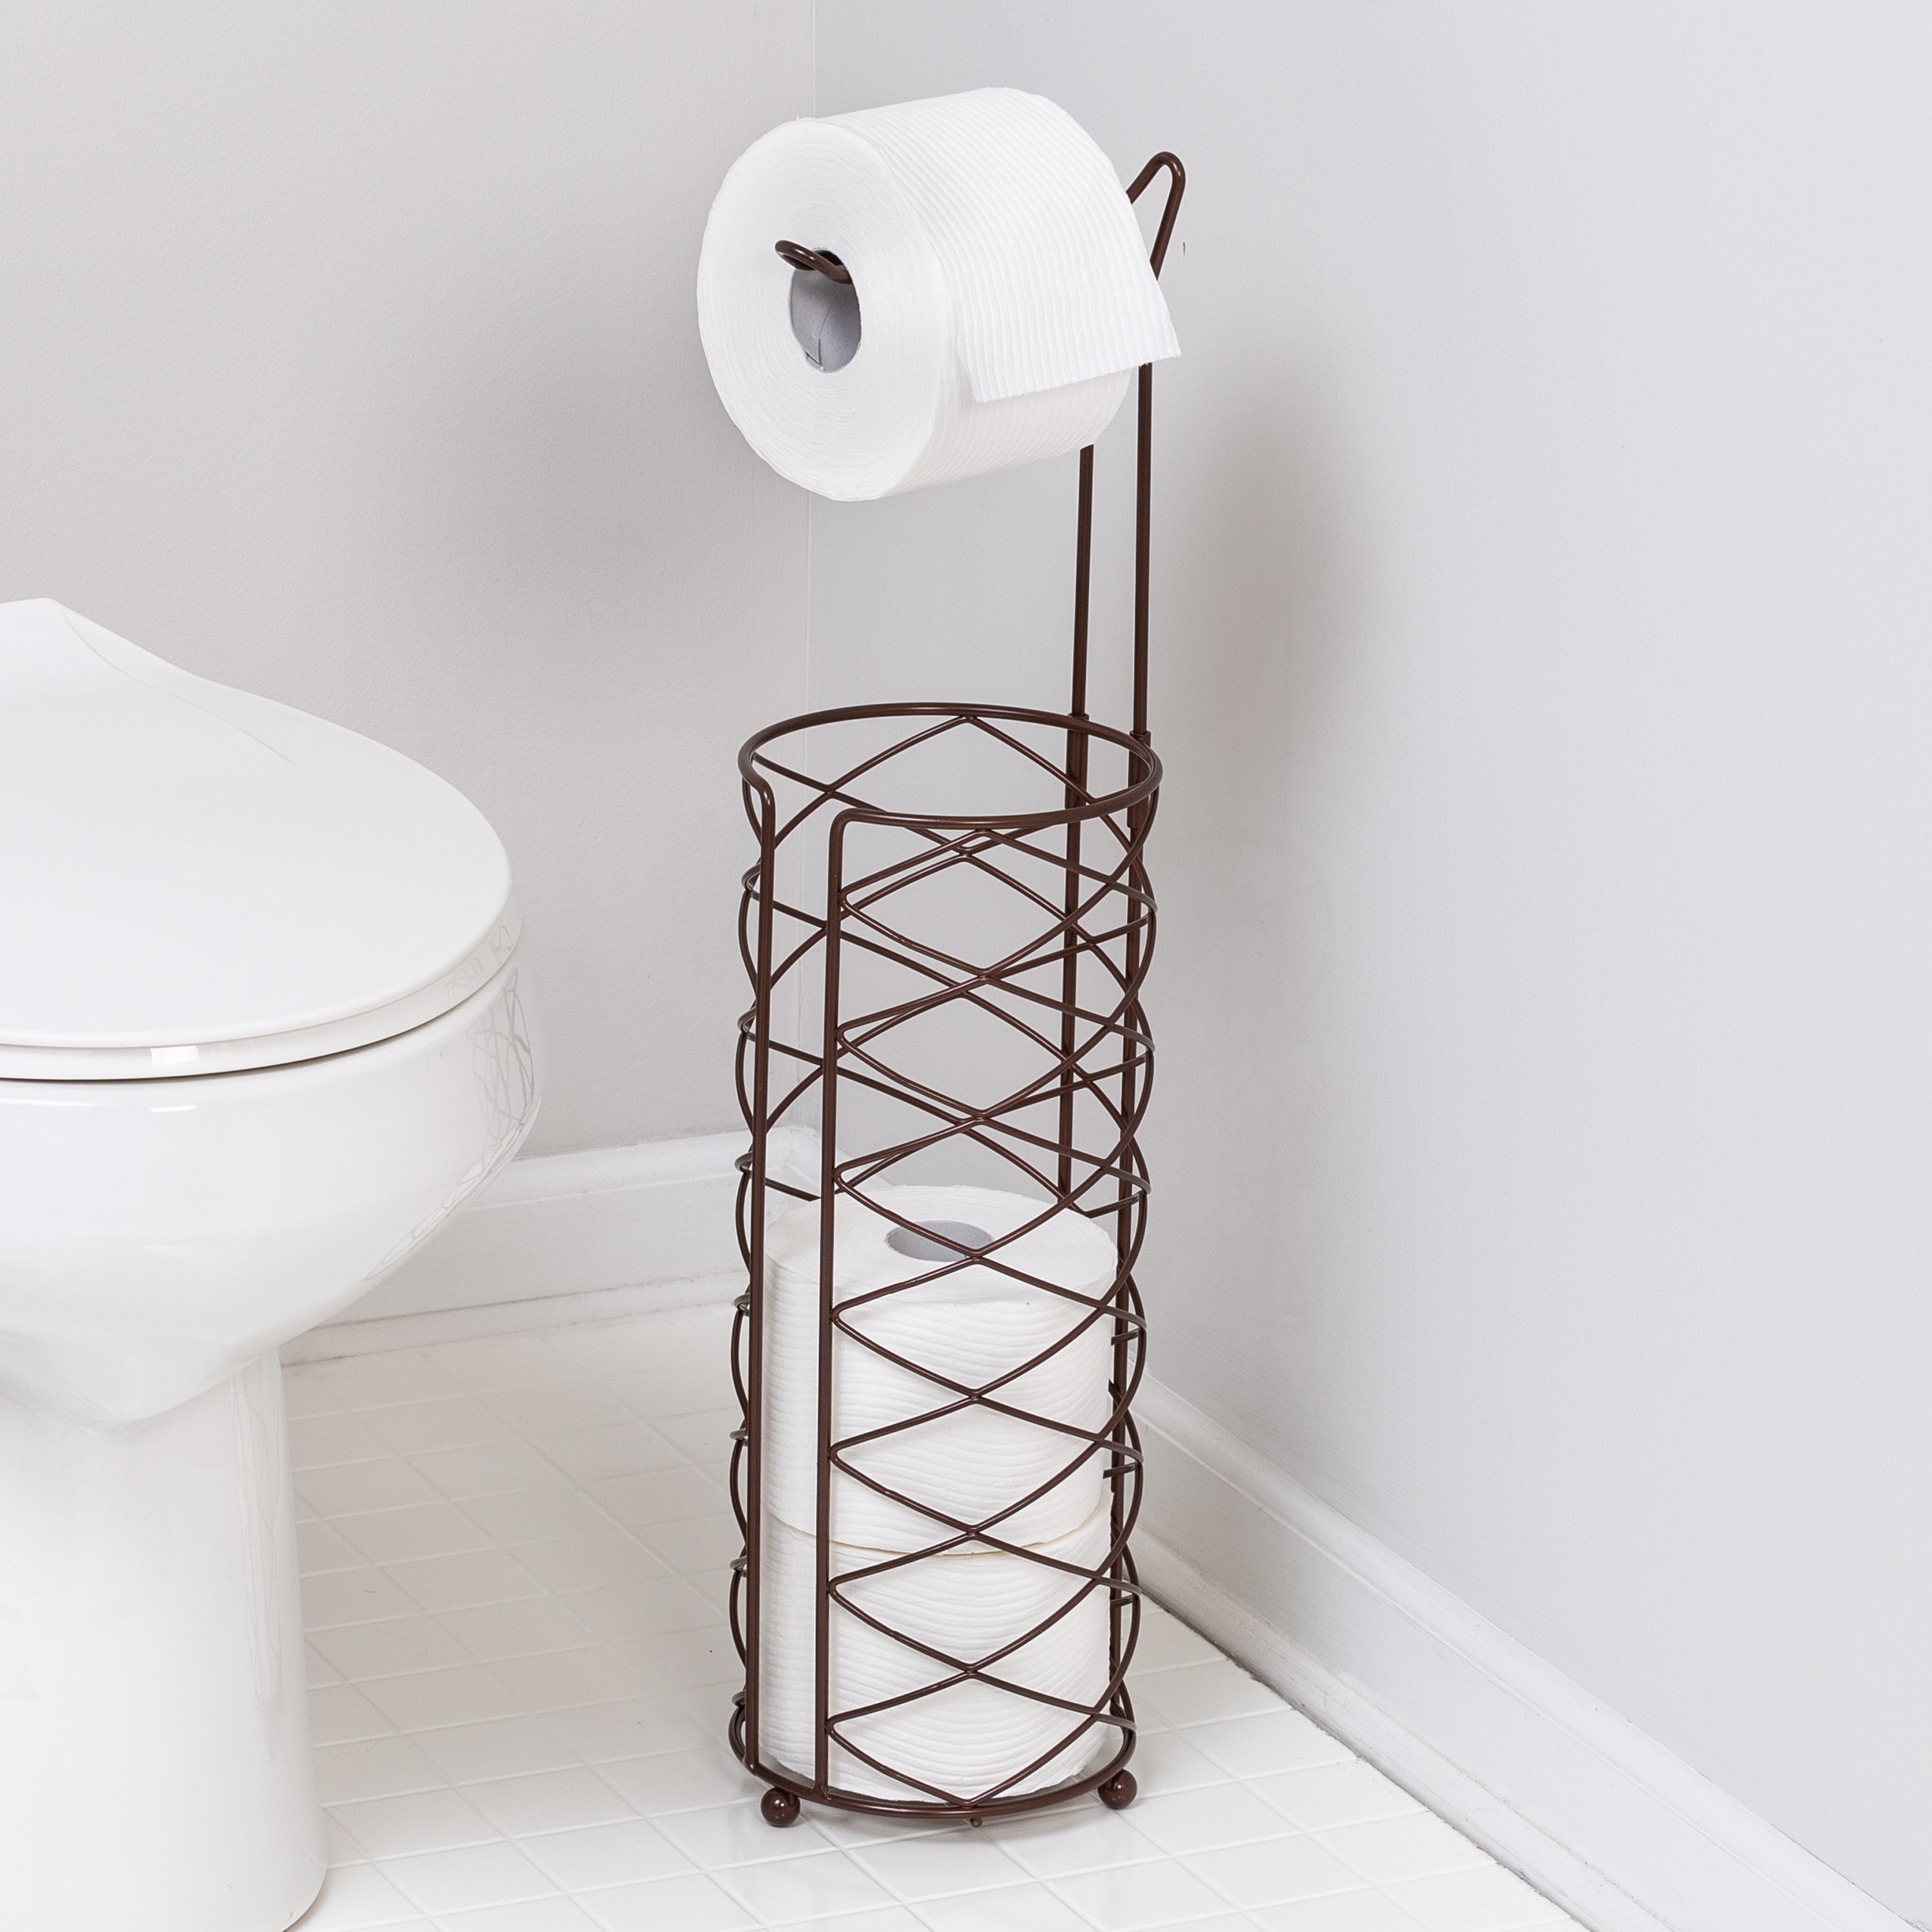 Honey-Can-Do Freestanding Toilet Paper Holder - Oil-Rubbed Bronze